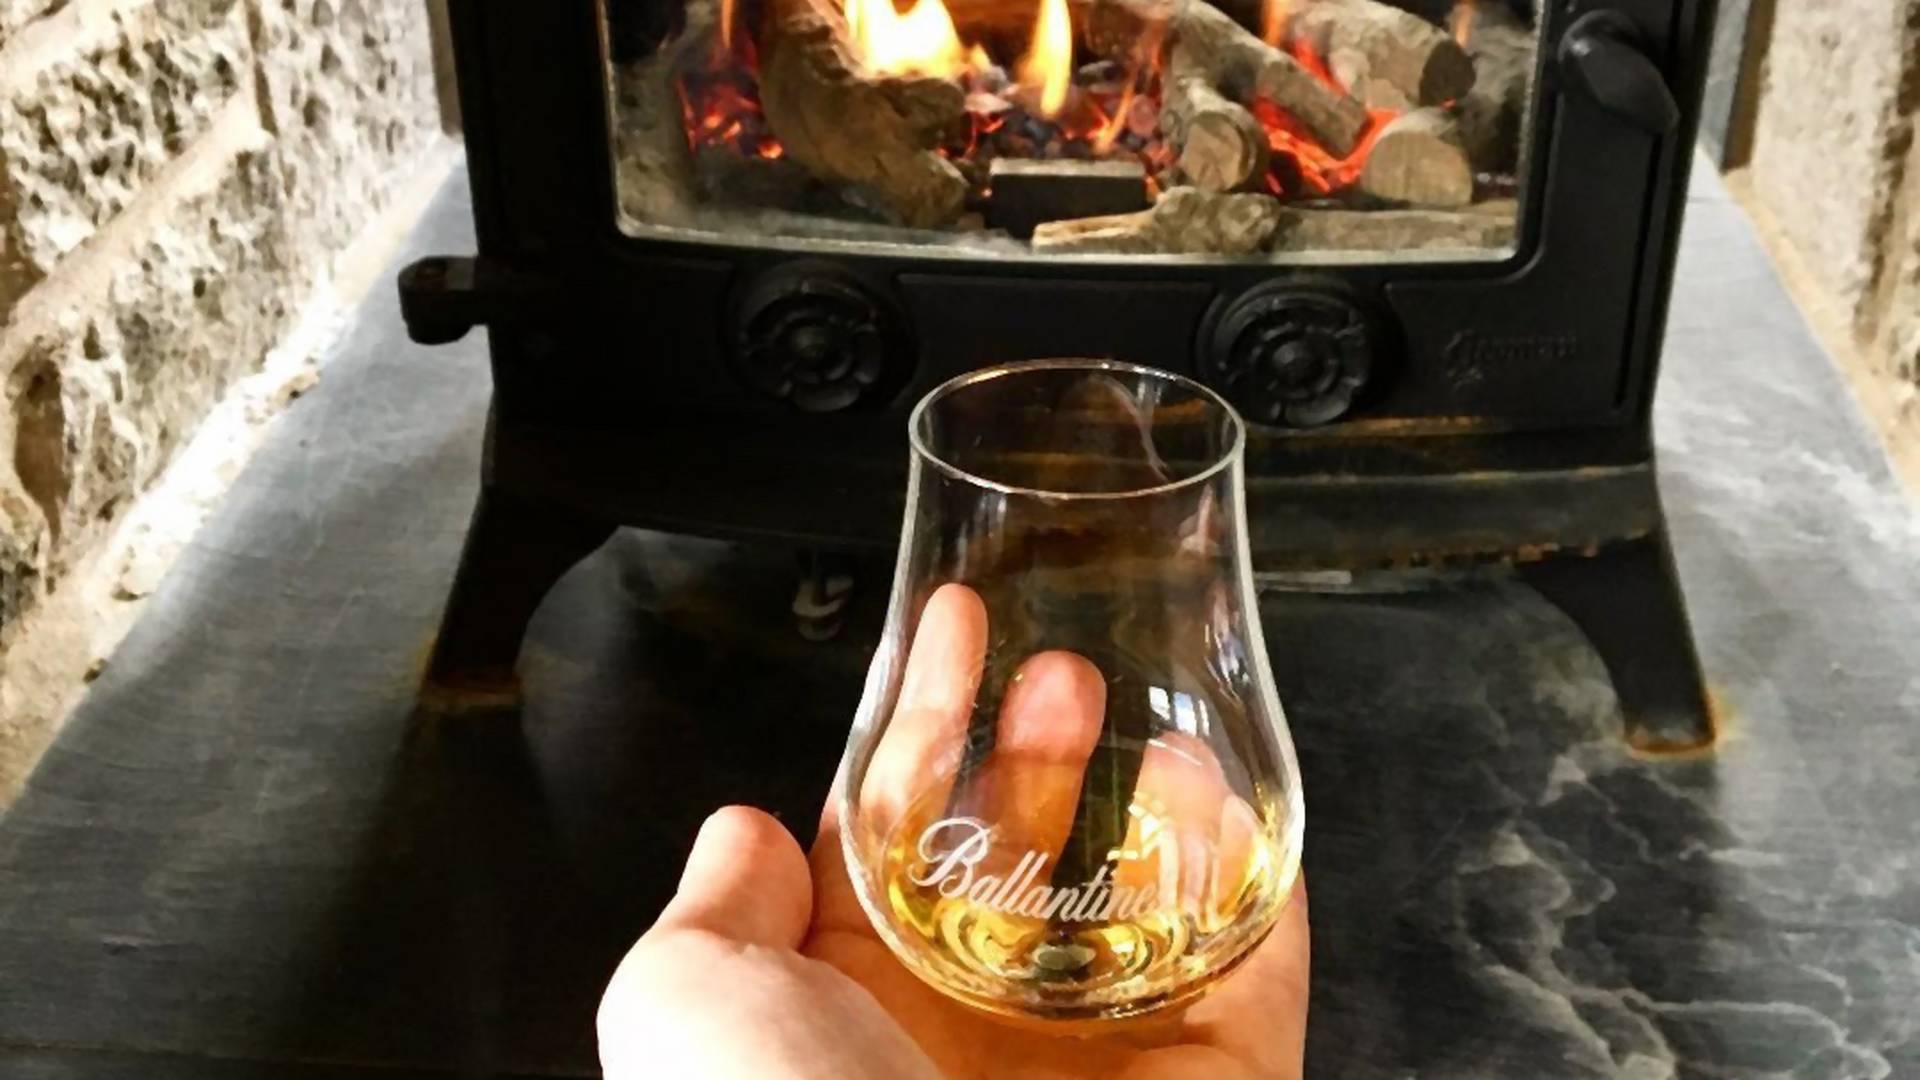 Odrobina whisky nowym remedium na przeziębienie? Z badań wynika, że może łagodzić objawy choroby